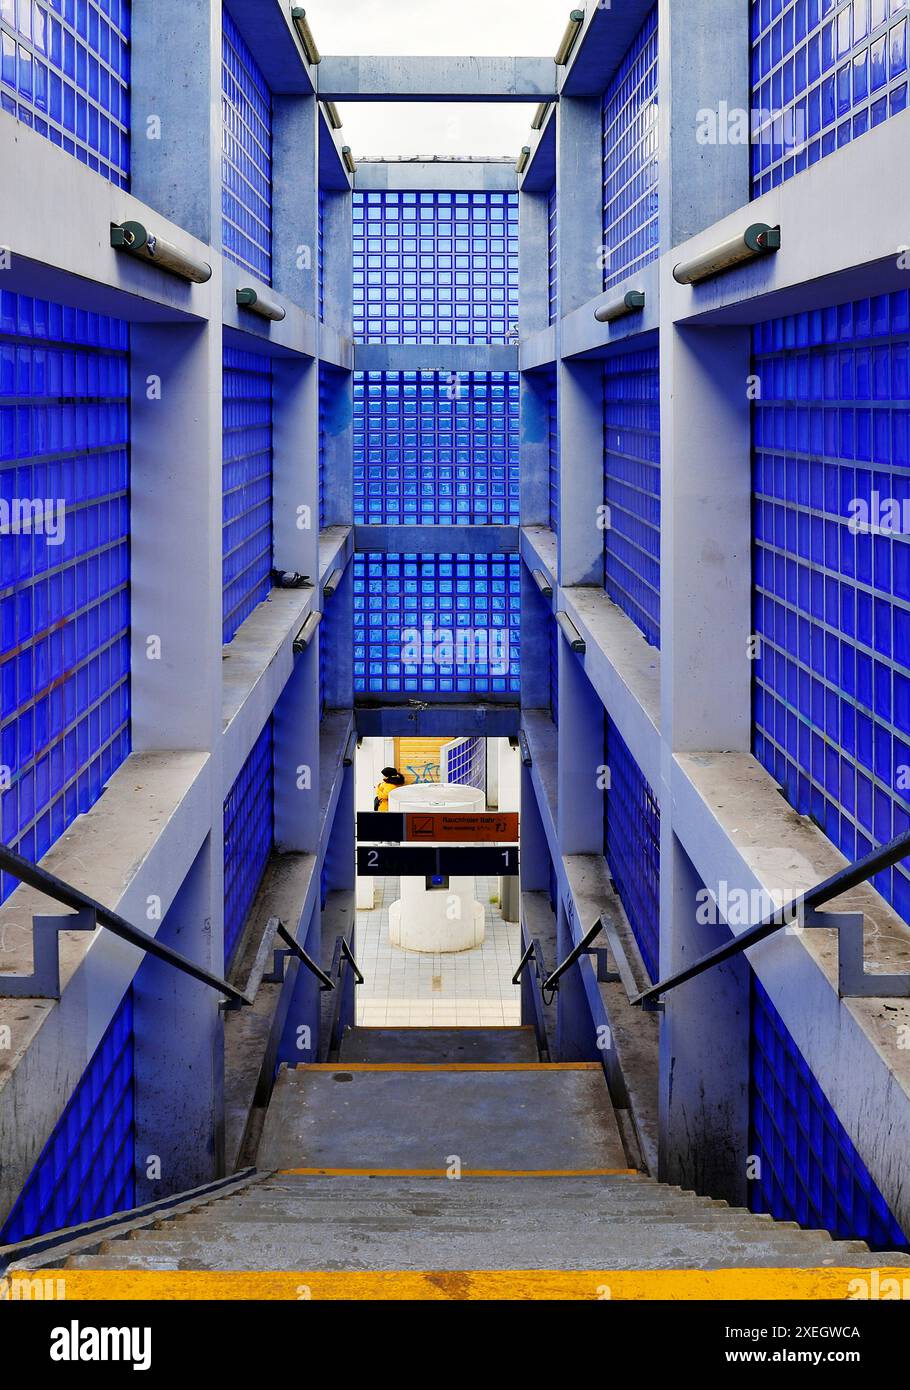 Zugang Bahnhof Hannover-Nordstadt, blaue Glasbausteine und Sichtbeton, Projekt für die Expo 2000, Hannover, Niedersachsen, Deutschland, Europa Stockfoto